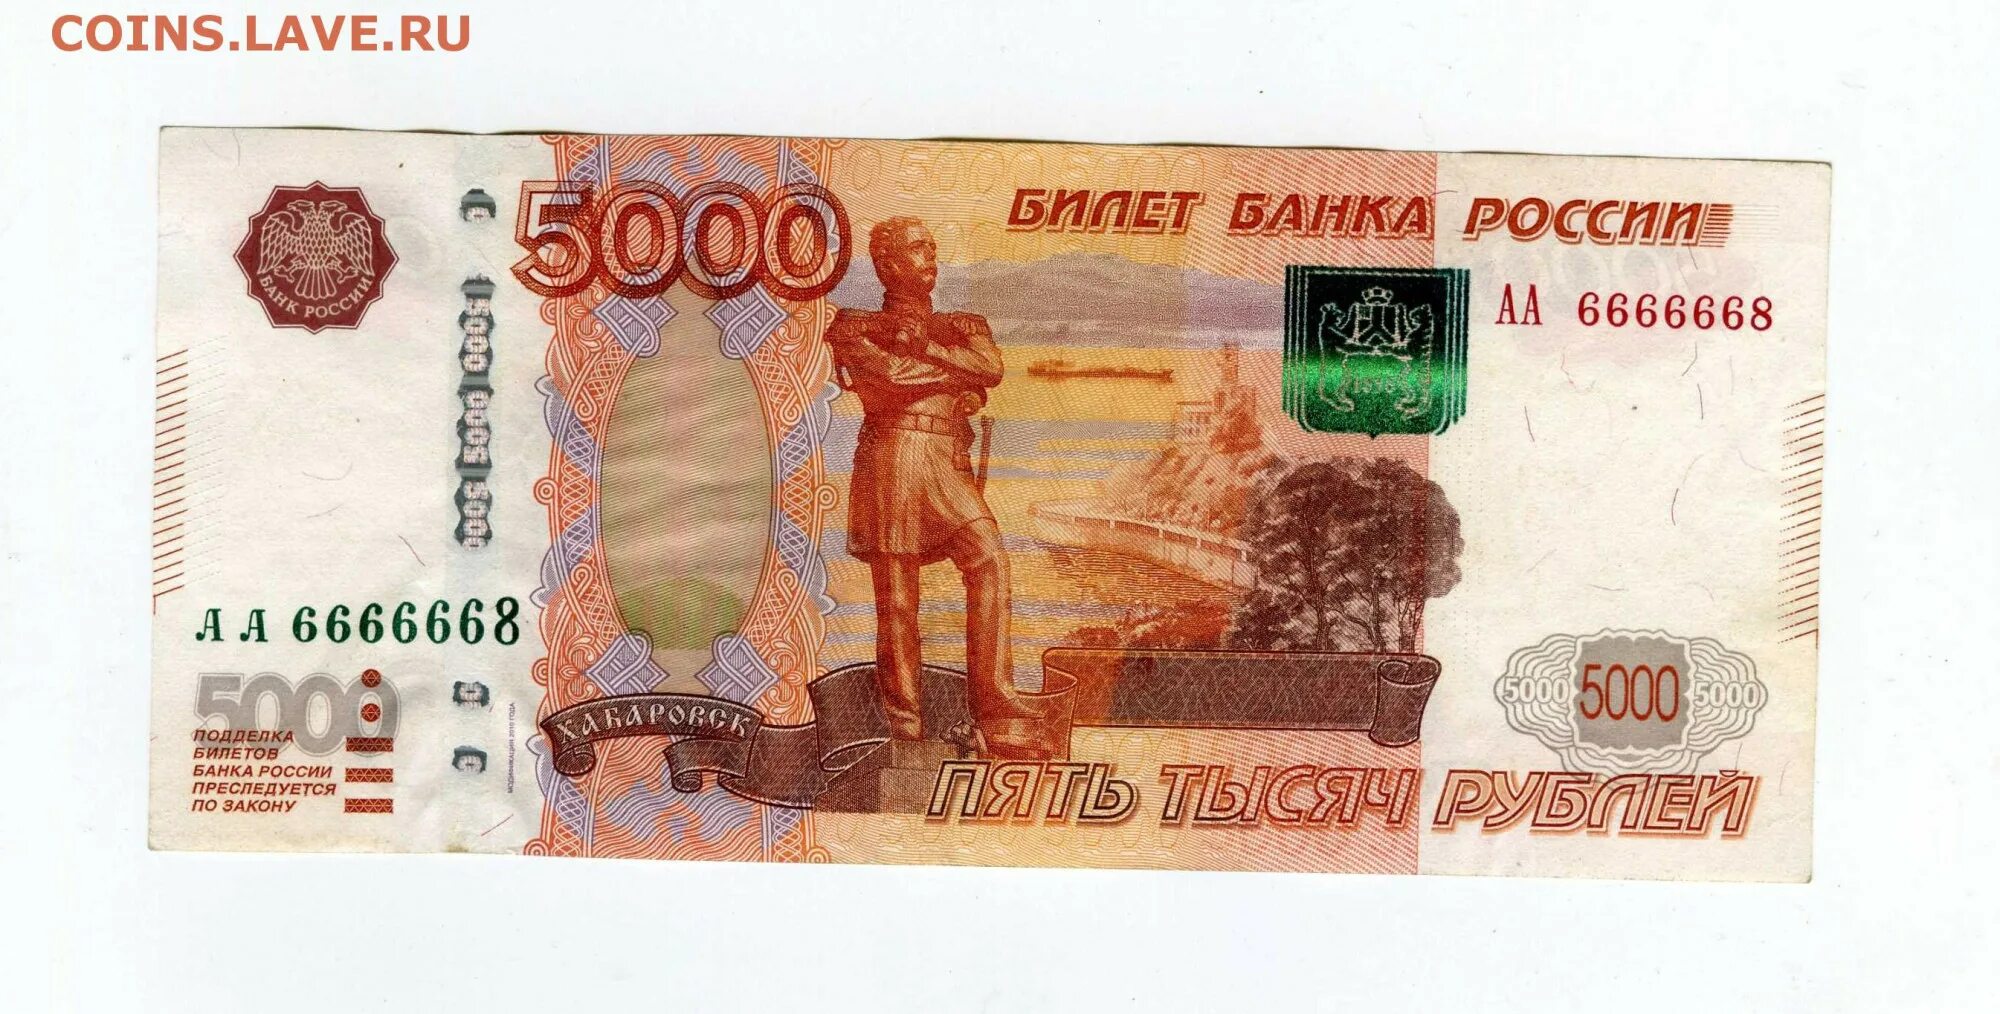 5000 рублей в феврале